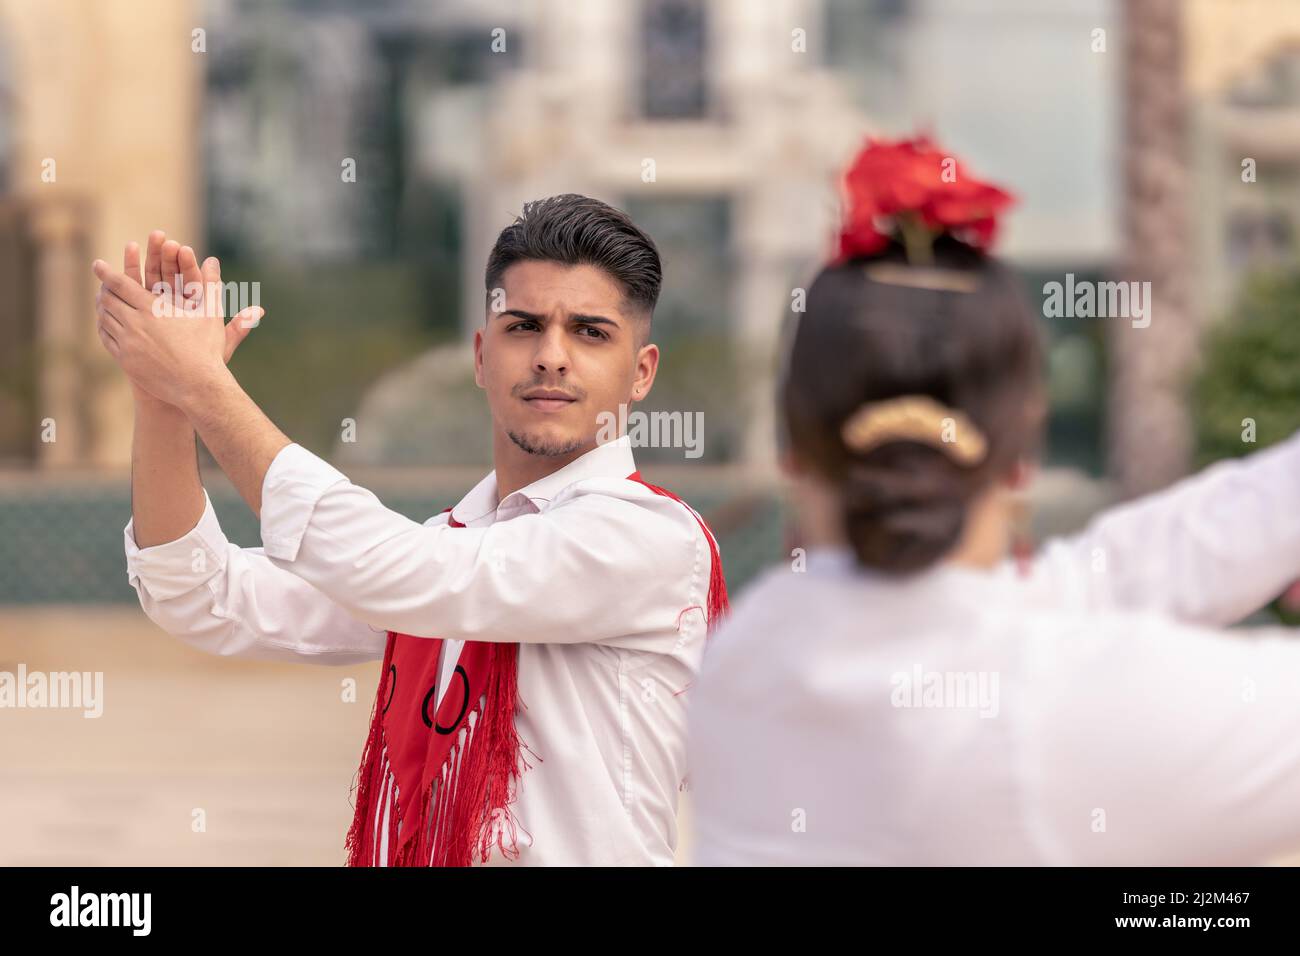 giovane ballerino maschile in un mantillo rosso che stringe le mani mentre balla flamenco con il suo compagno per strada Foto Stock